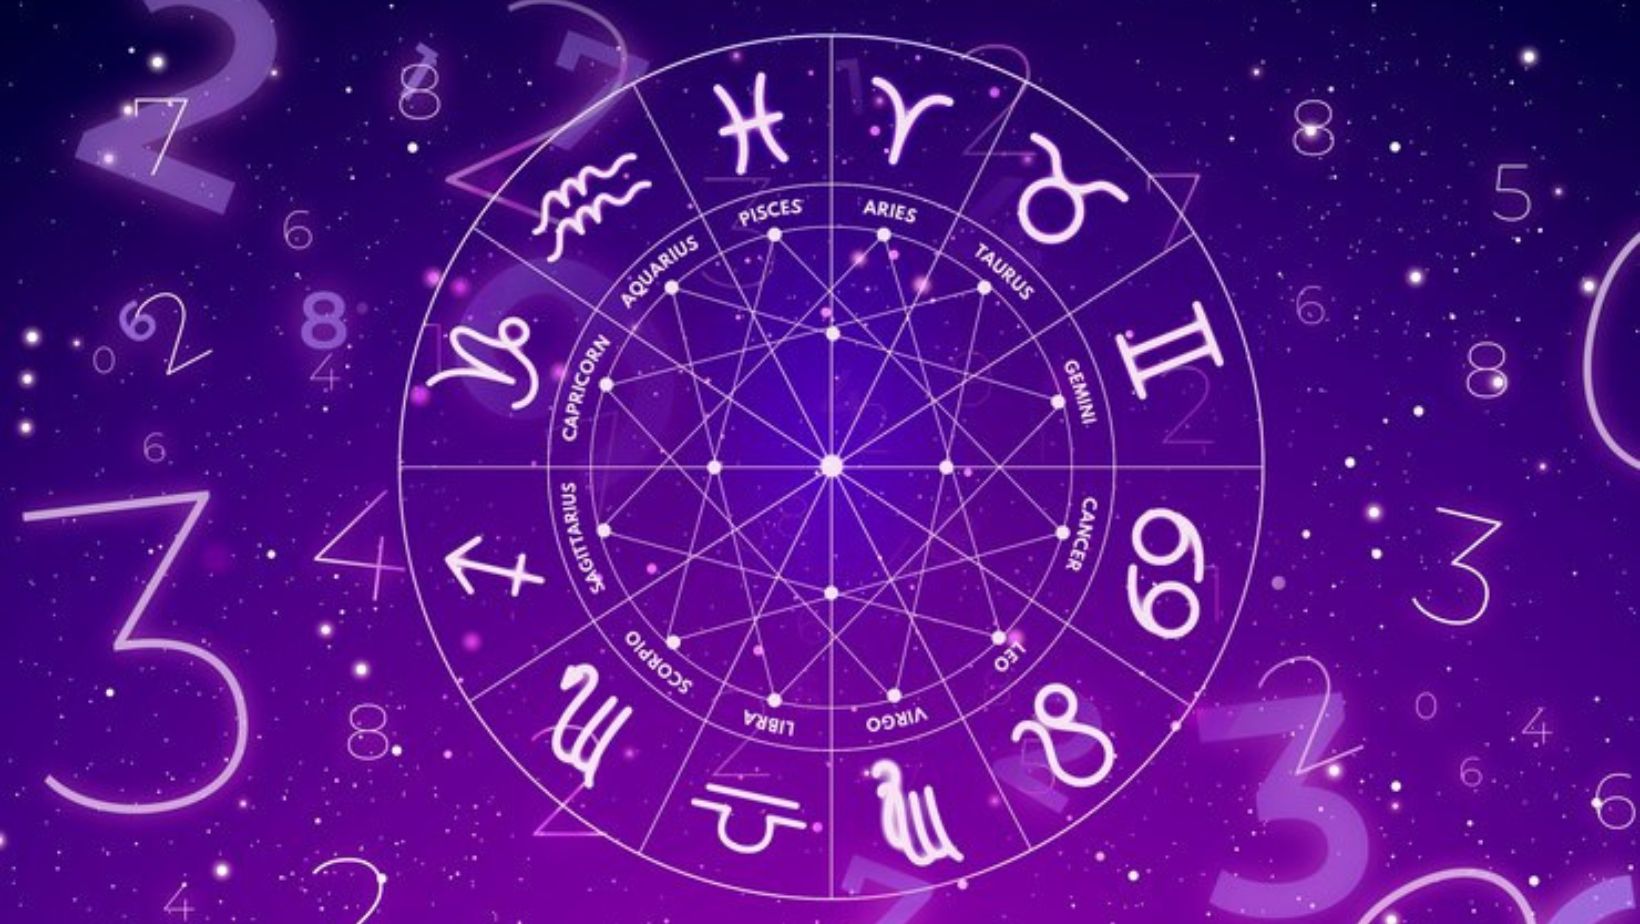 Horóscopo gratis para hoy 17 de julio: señales para Leo, Escorpio, Acurio y más